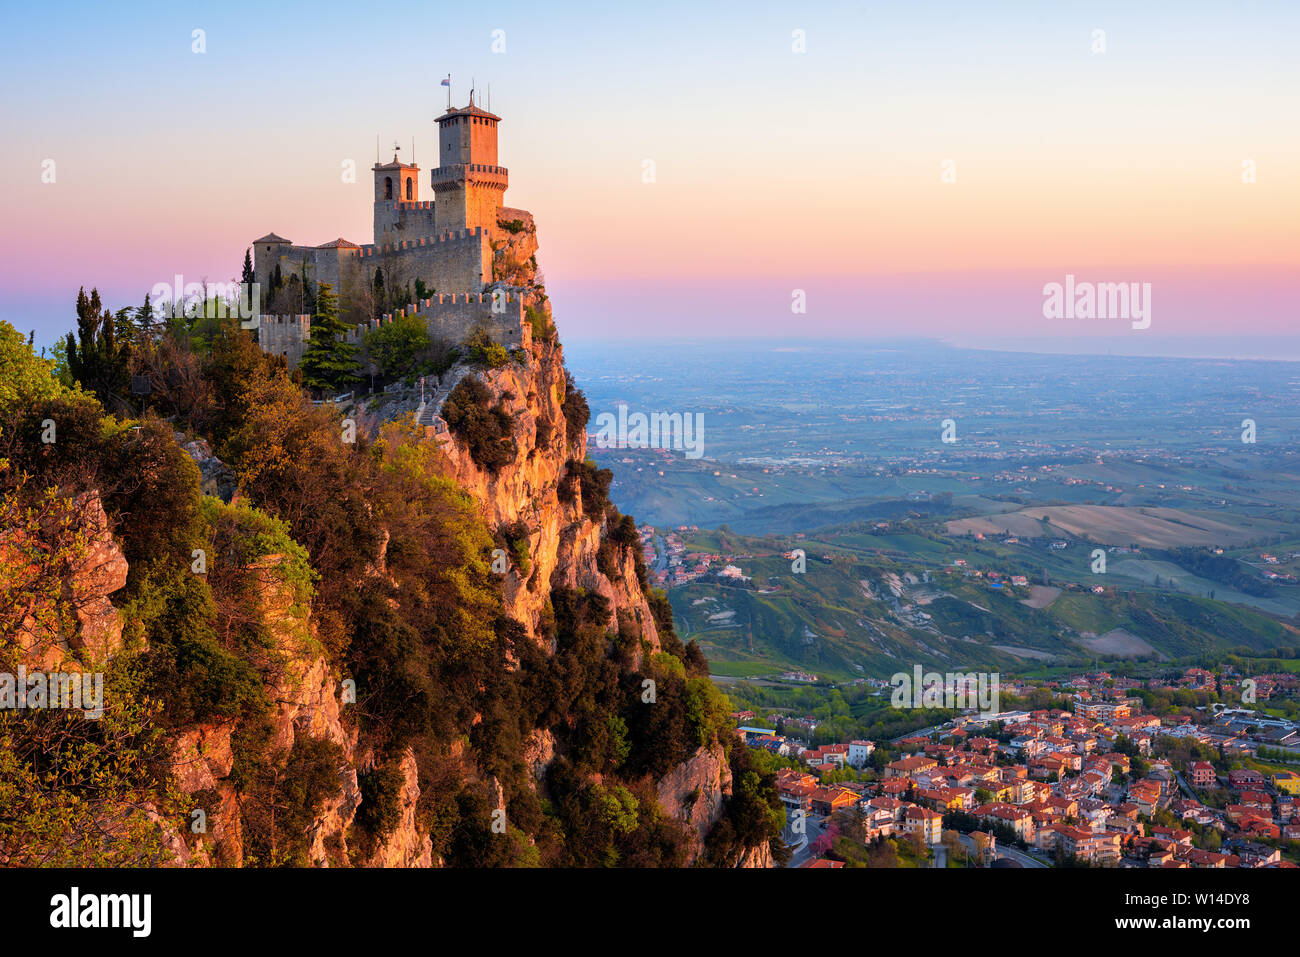 Guaita, la prima delle tre torri di San Marino, sulla cima del monte Titano rock nella luce di sunrise, Repubblica di San Marino. Guaita è Patrimonio mondiale Foto Stock